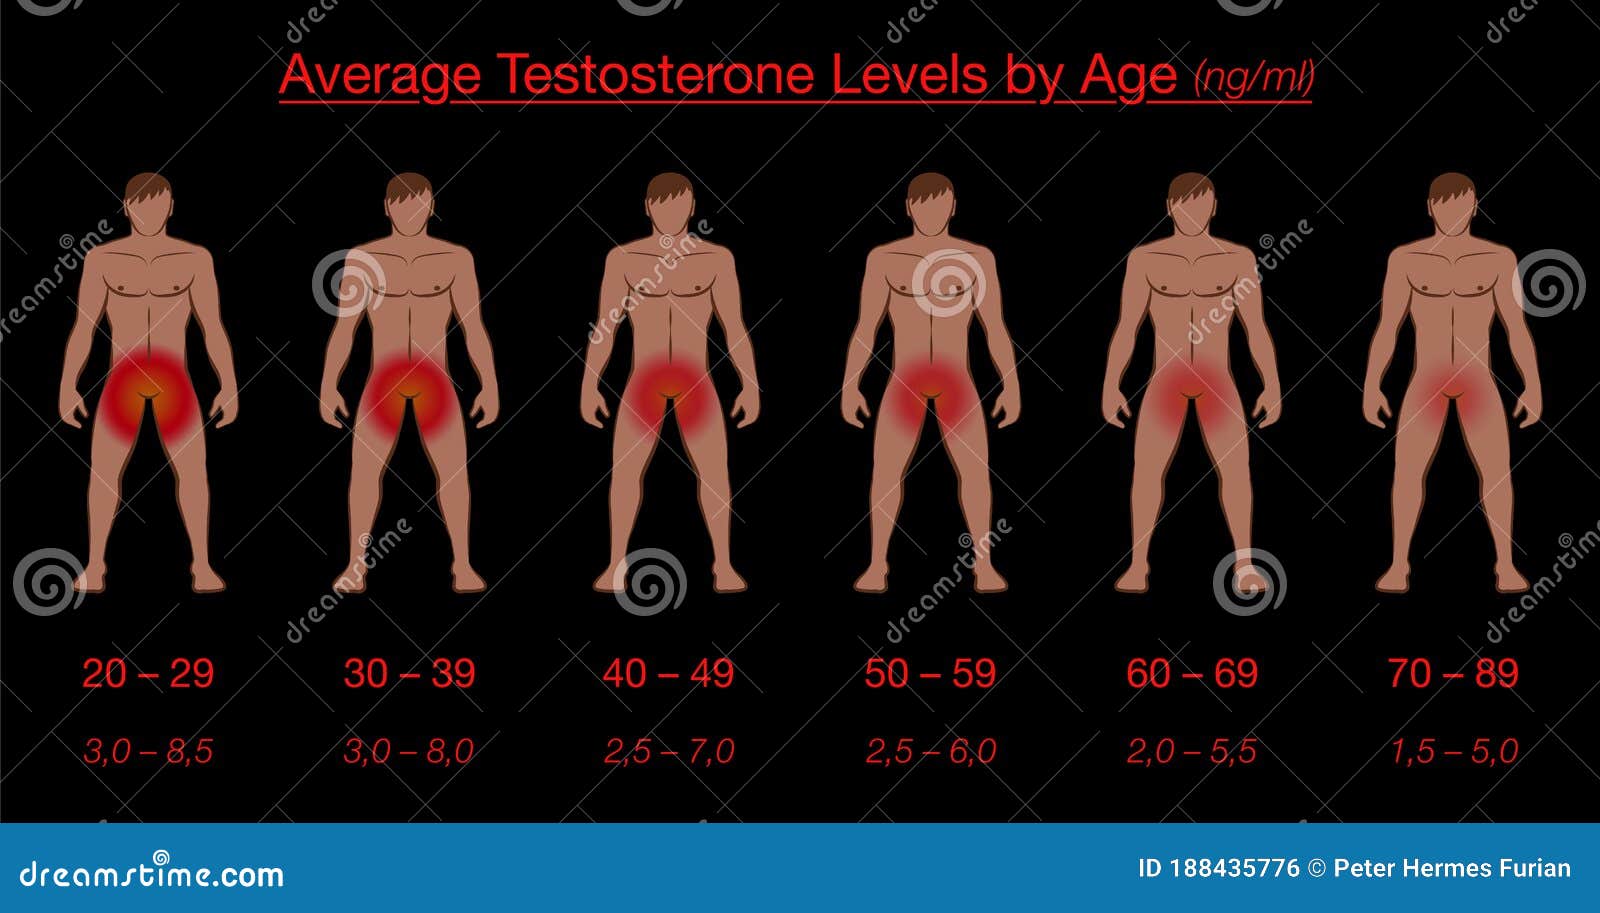 тестостерон и длина члена фото 4